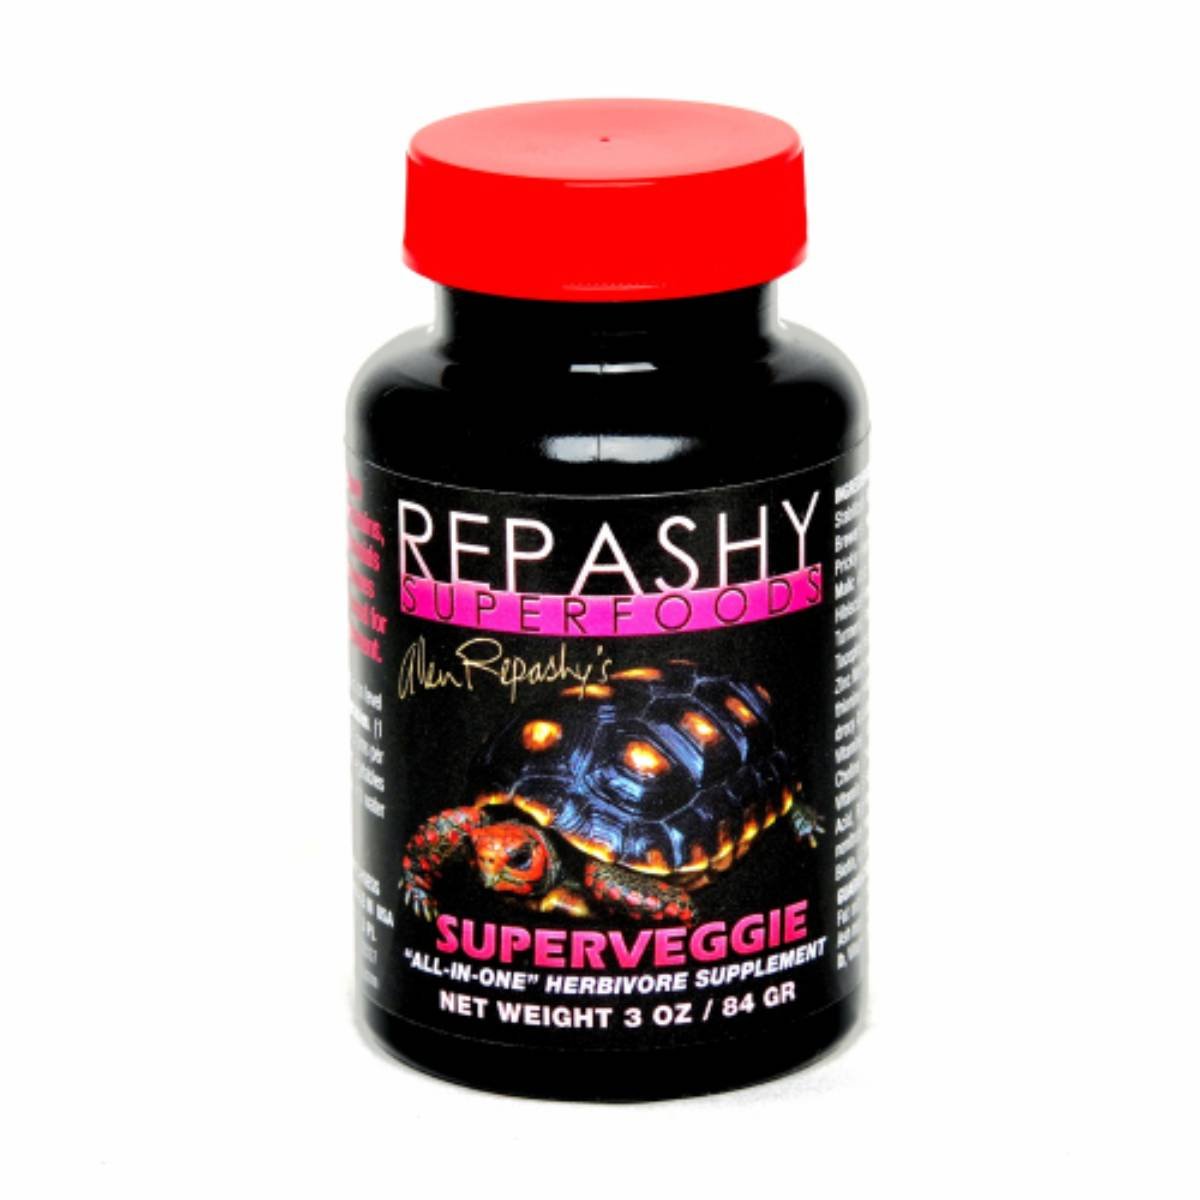 Repashy Superveggie (3oz Jar)